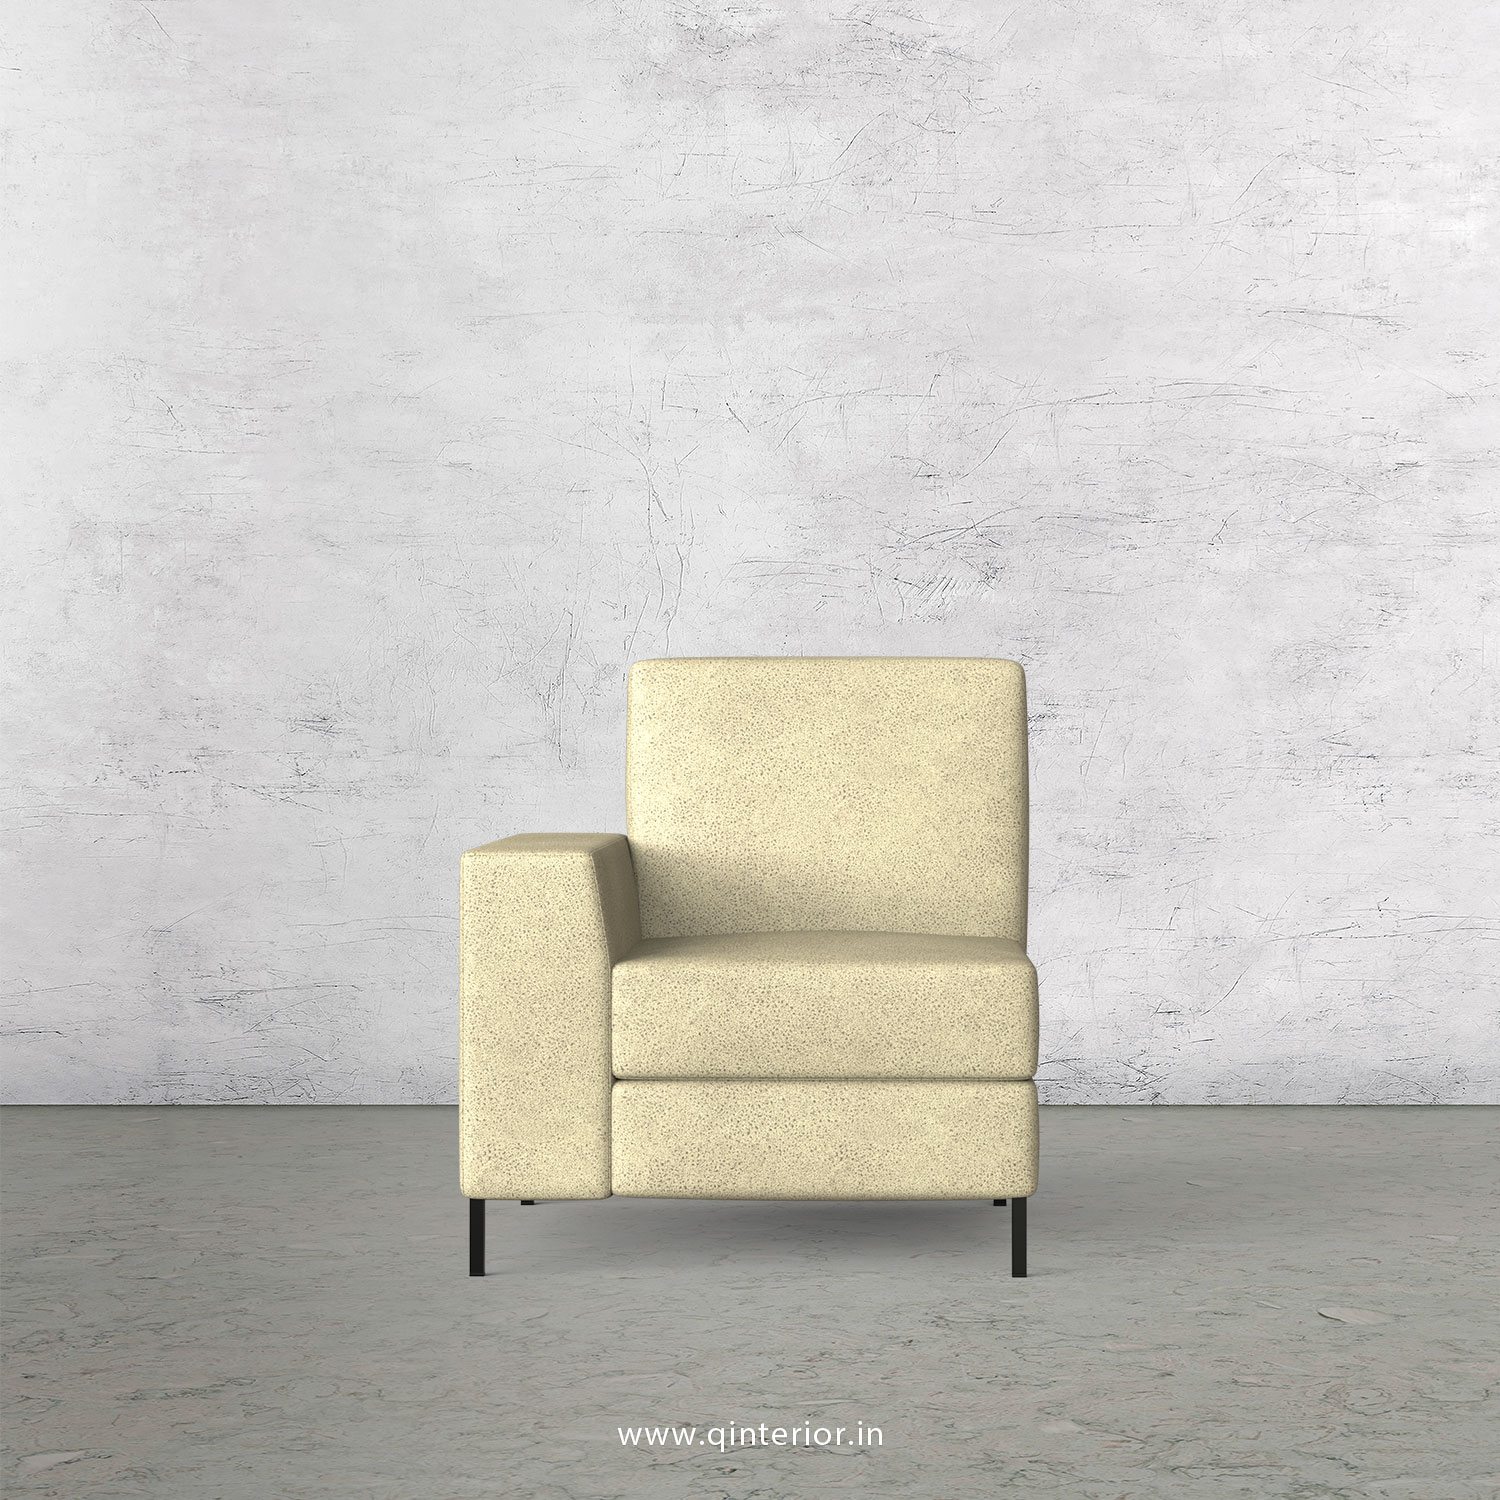 Viva 1 Seater Modular Sofa in Fab Leather Fabric - MSFA001 FL10